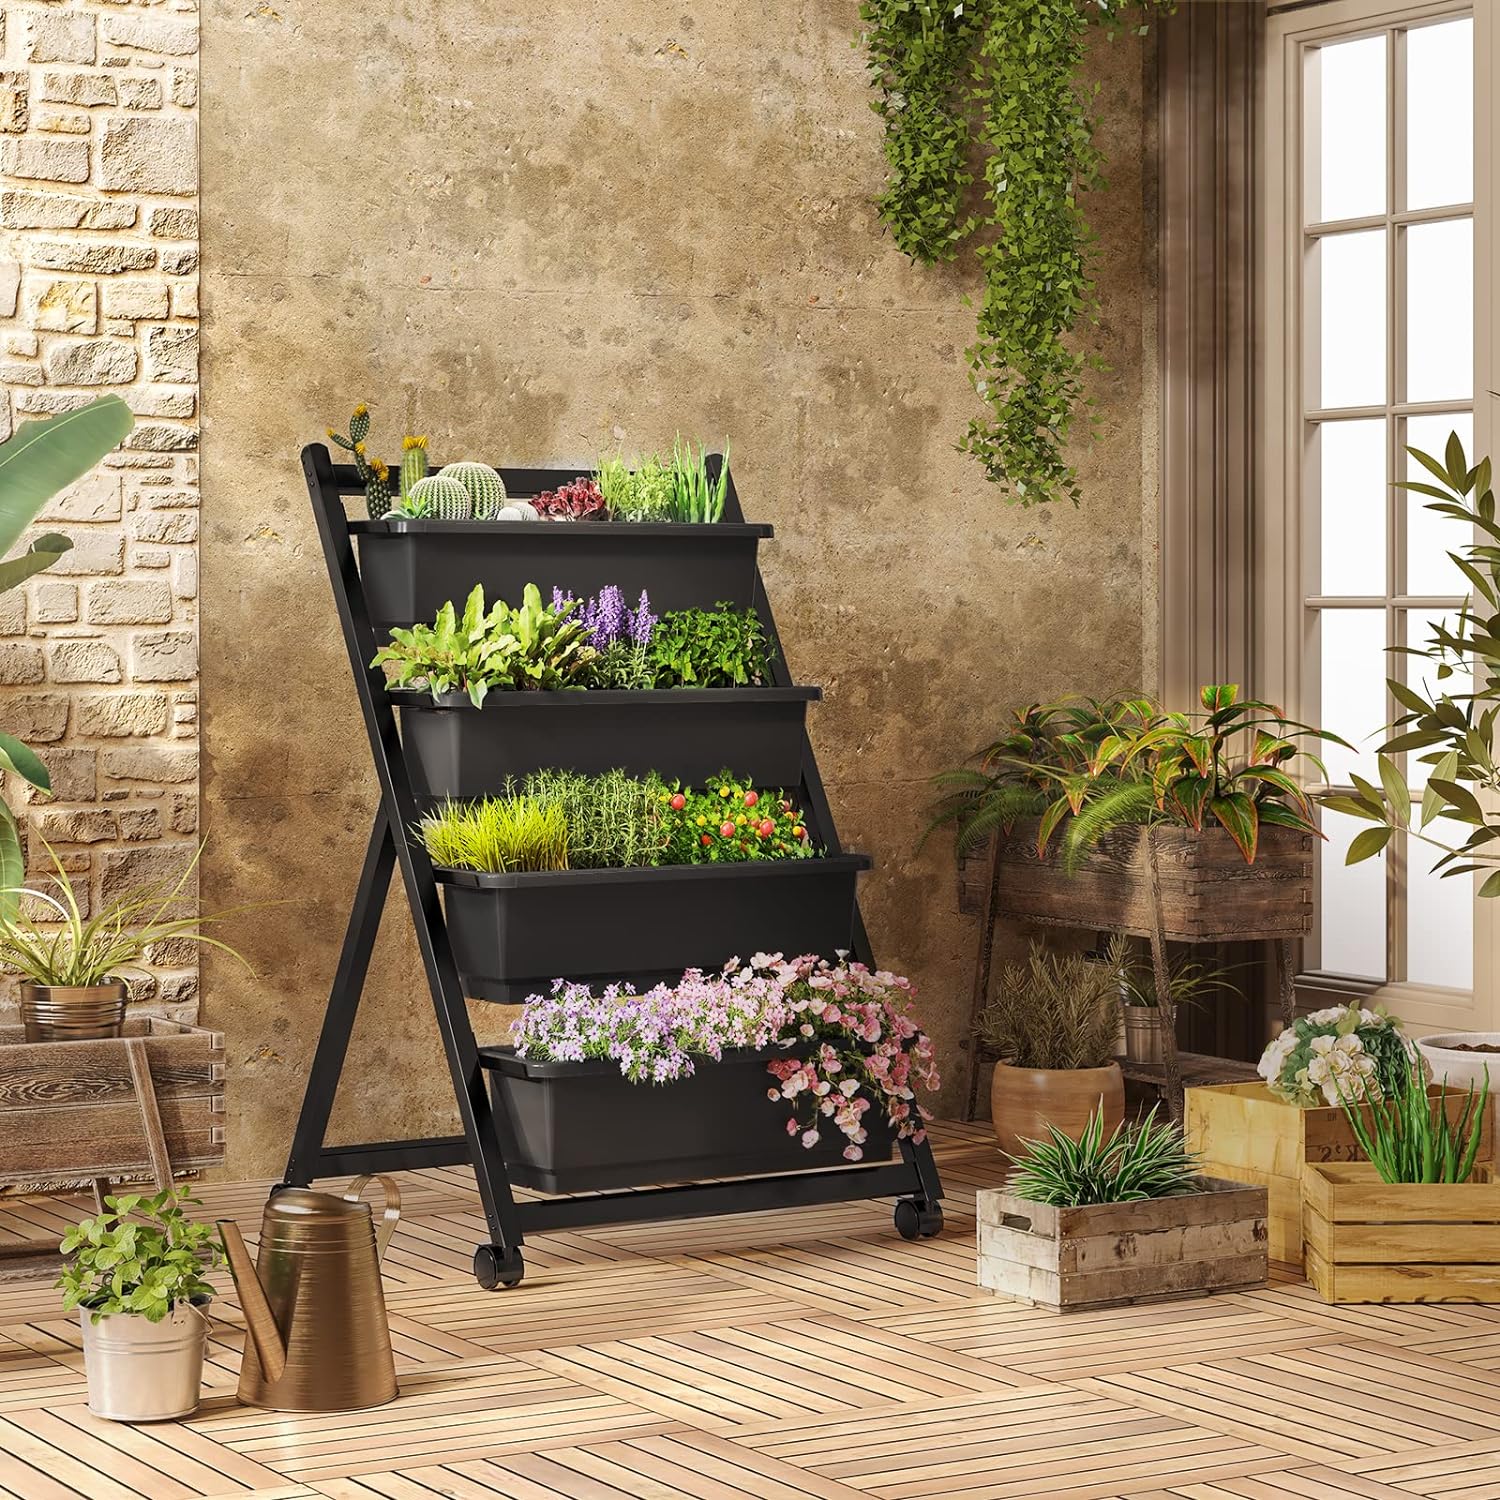 FLEXIMOUNTS Vertical Raised Garden Bed w/Wheels 4 Tiers Freestanding Elevated Garden Planters